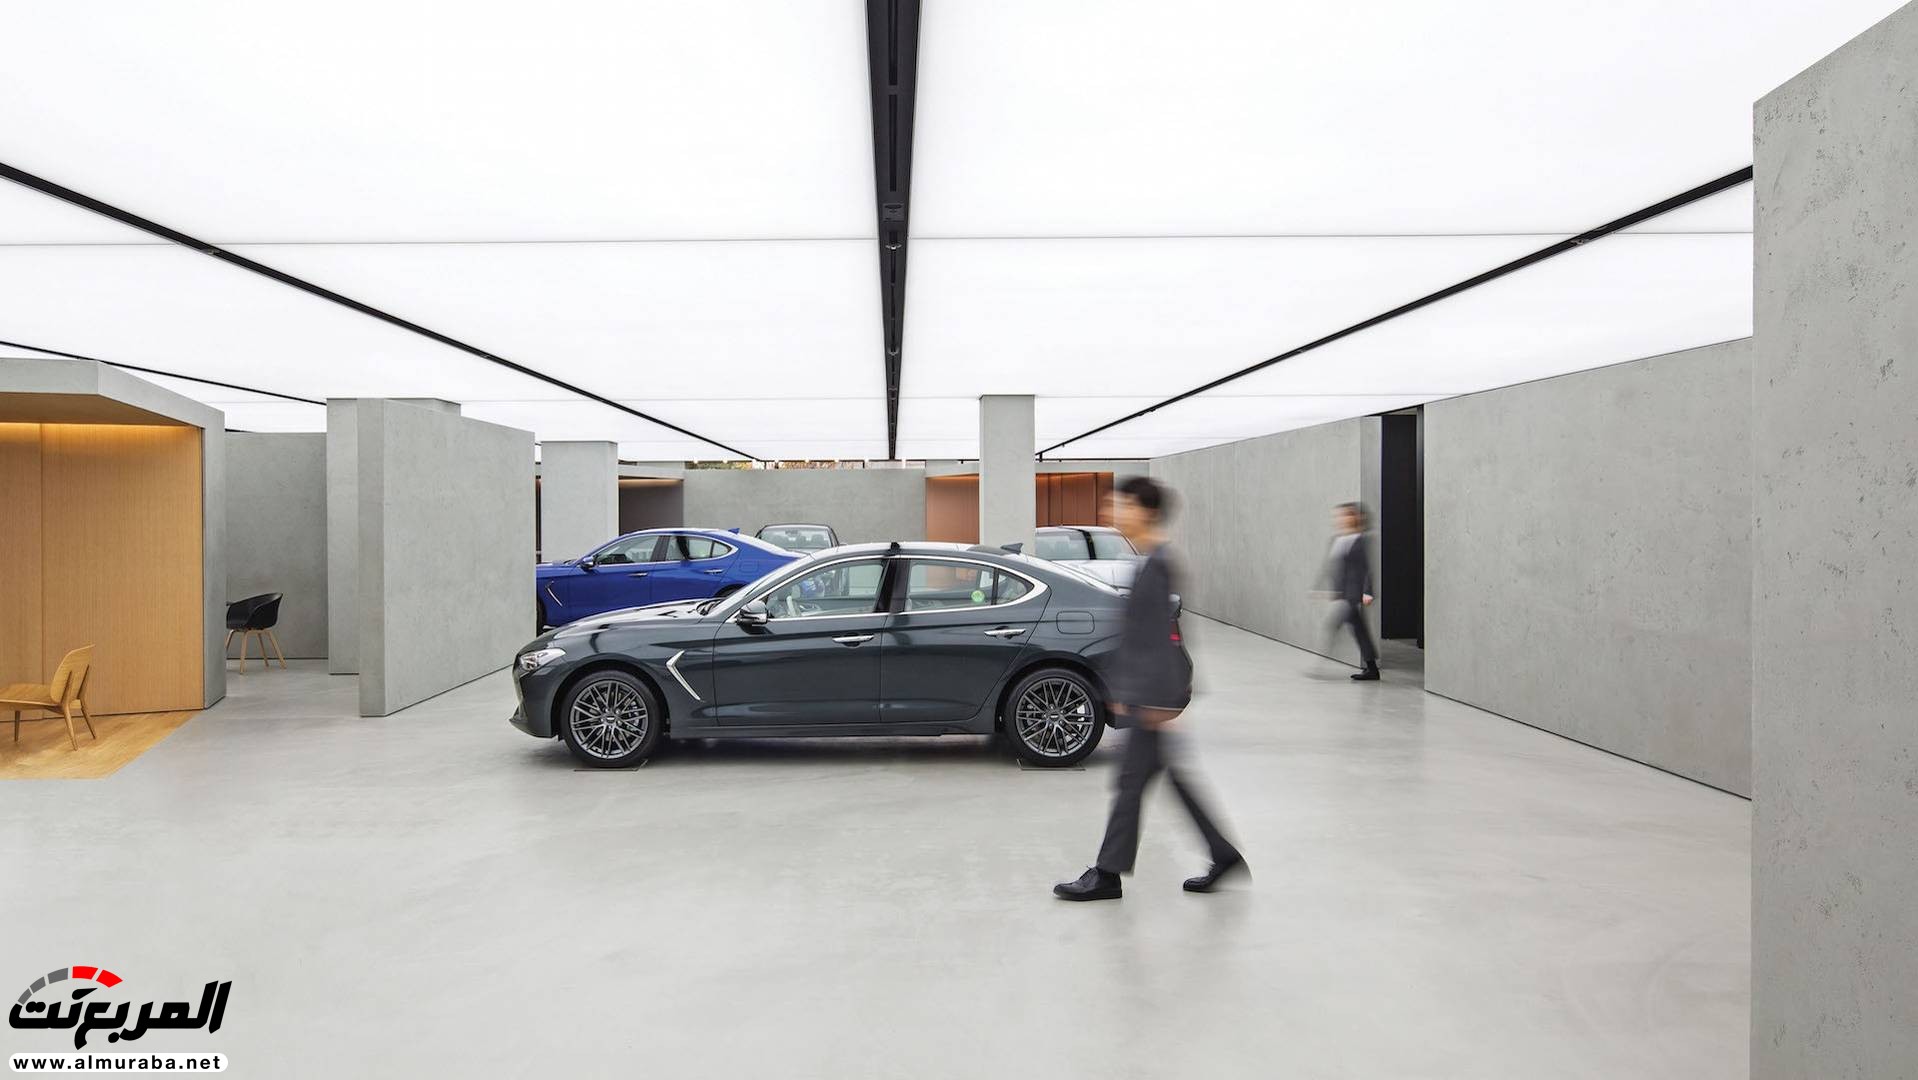 "بالصور" جينيسيس تفتتح رسمياً أول صالة عرض متكاملة لسياراتها في العالم 6